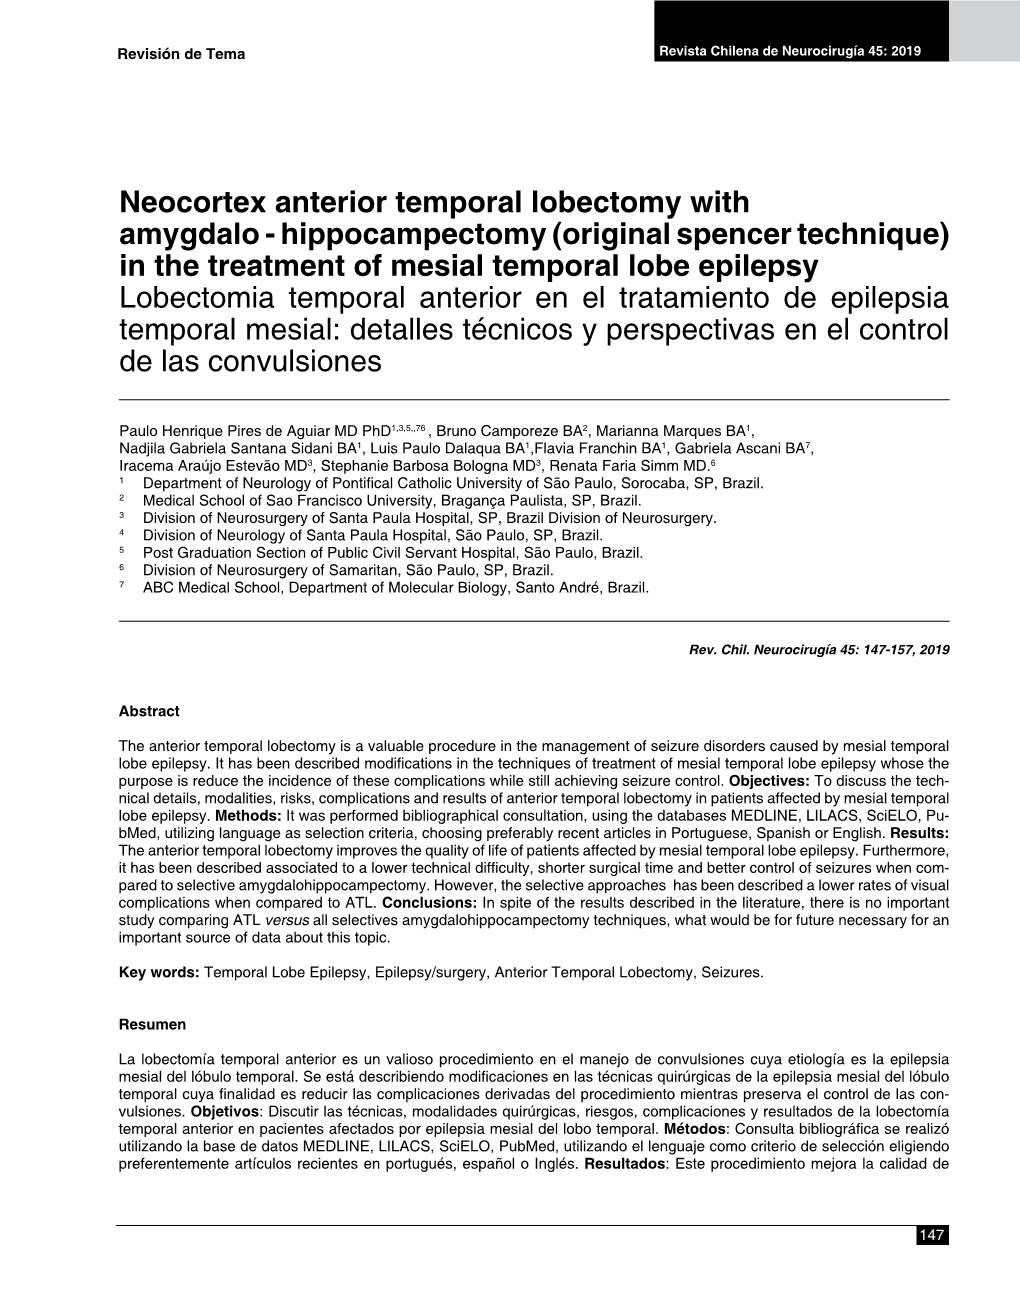 Neocortex Anterior Temporal Lobectomy with Amygdalo